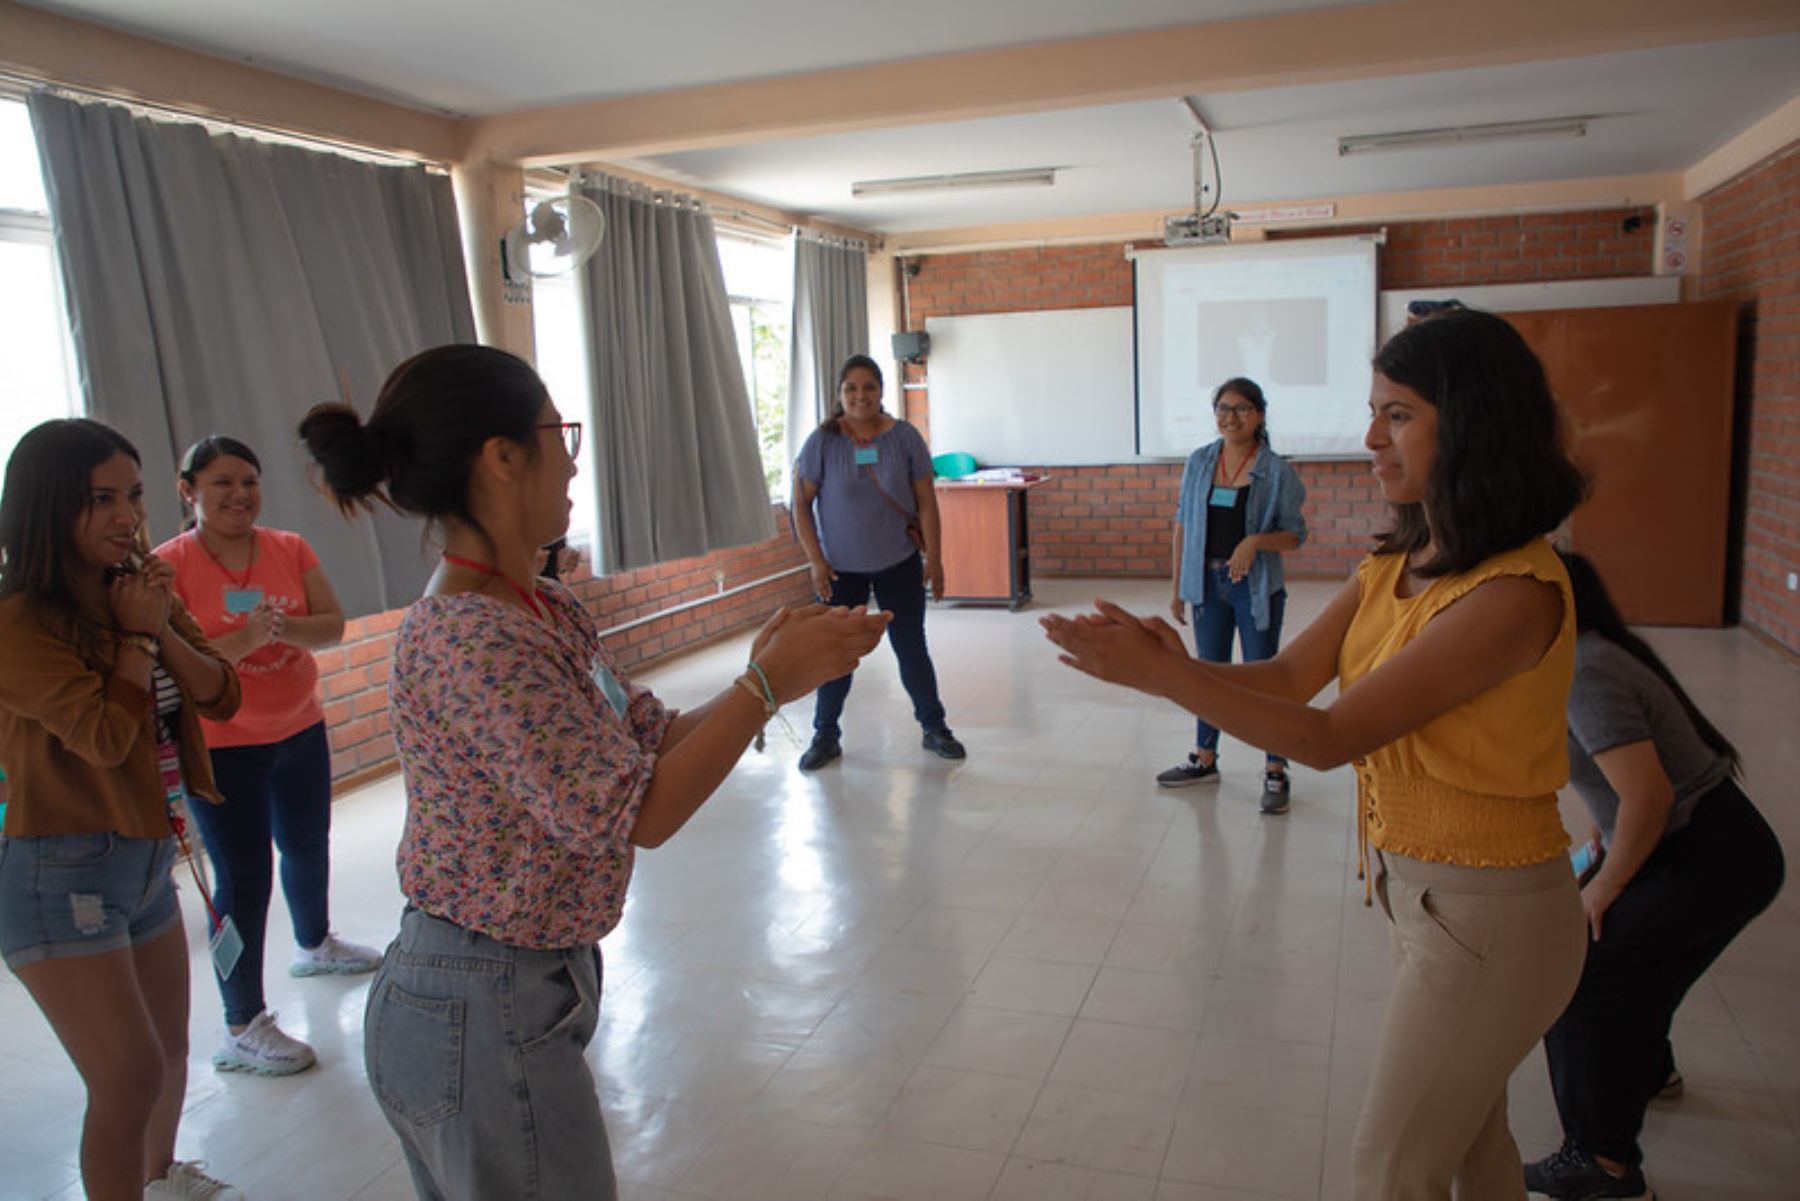 Los jóvenes voluntarios son proactivos y poseen una motivación desinteresada e intrínseca por practicar el bien común. Foto: Cortesía/Andina.